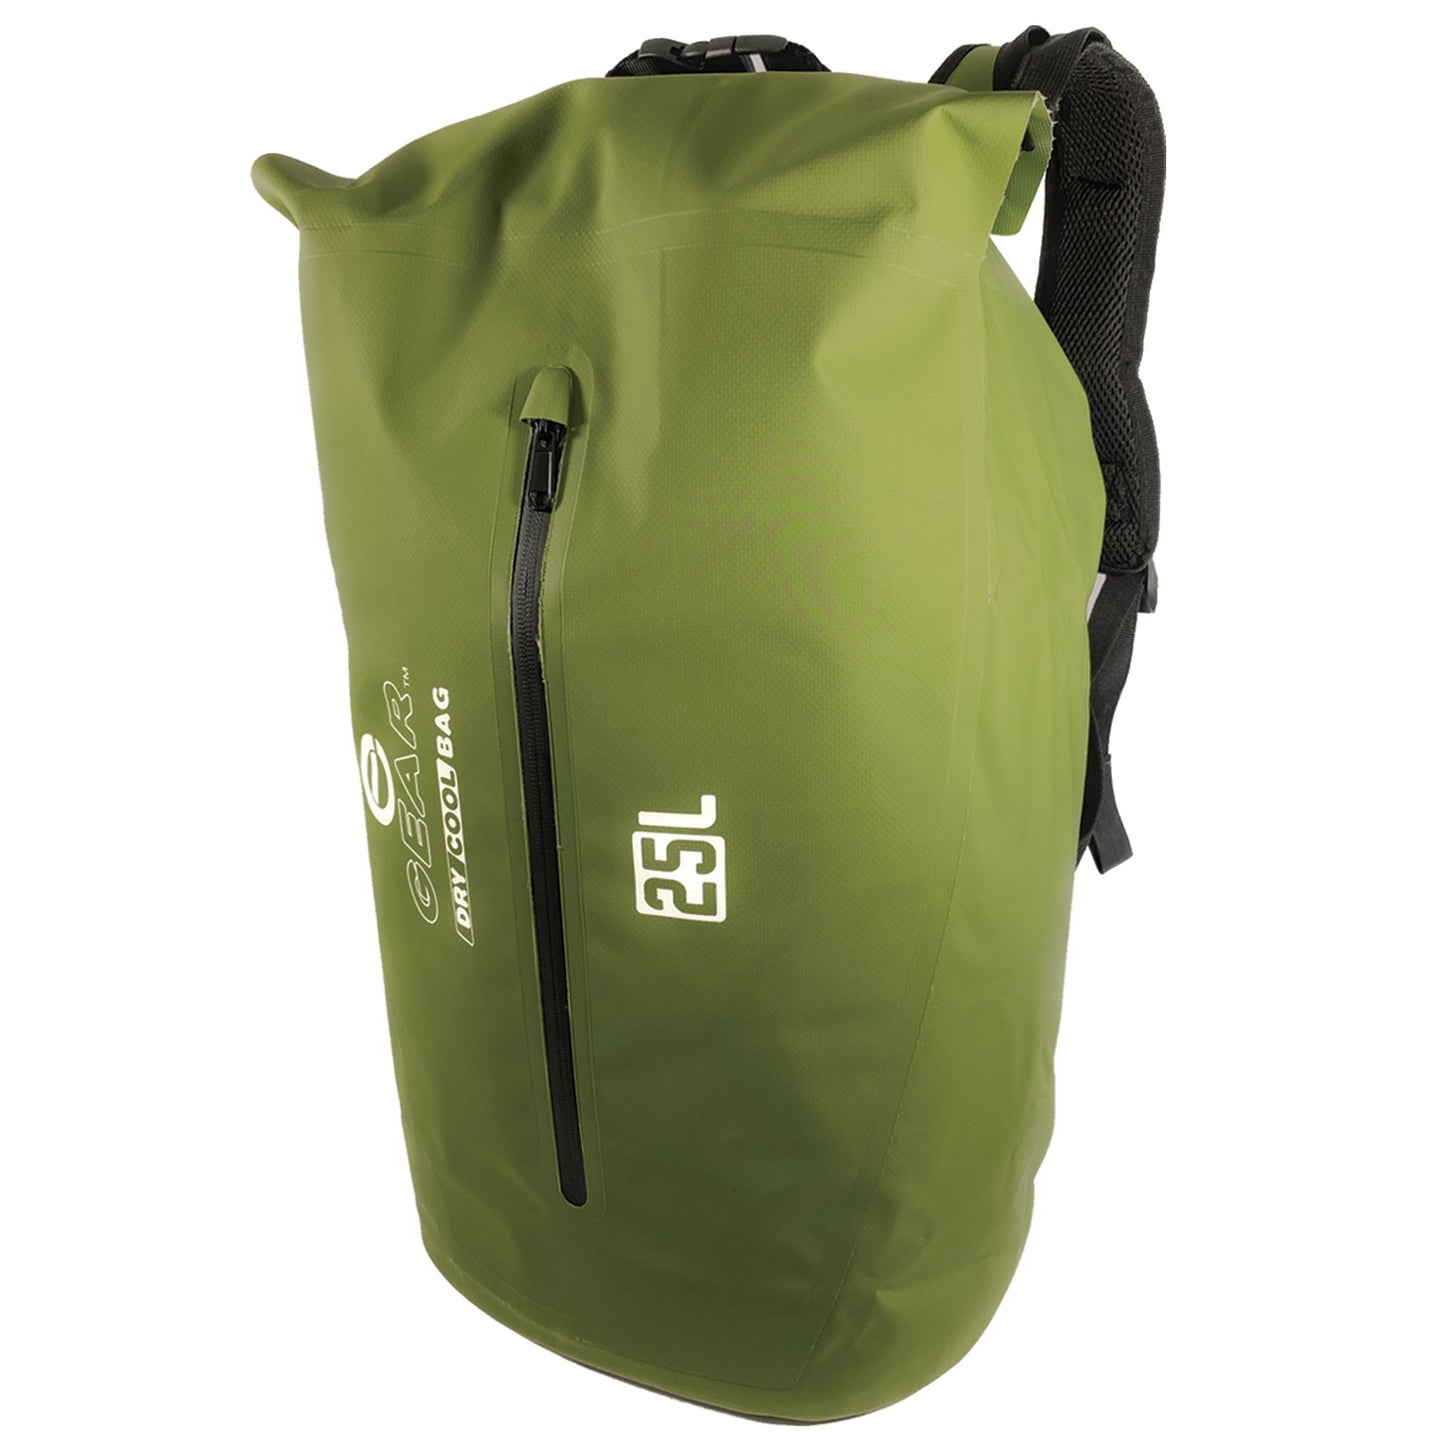 25L Dry Bag Cooler Backpack - Green